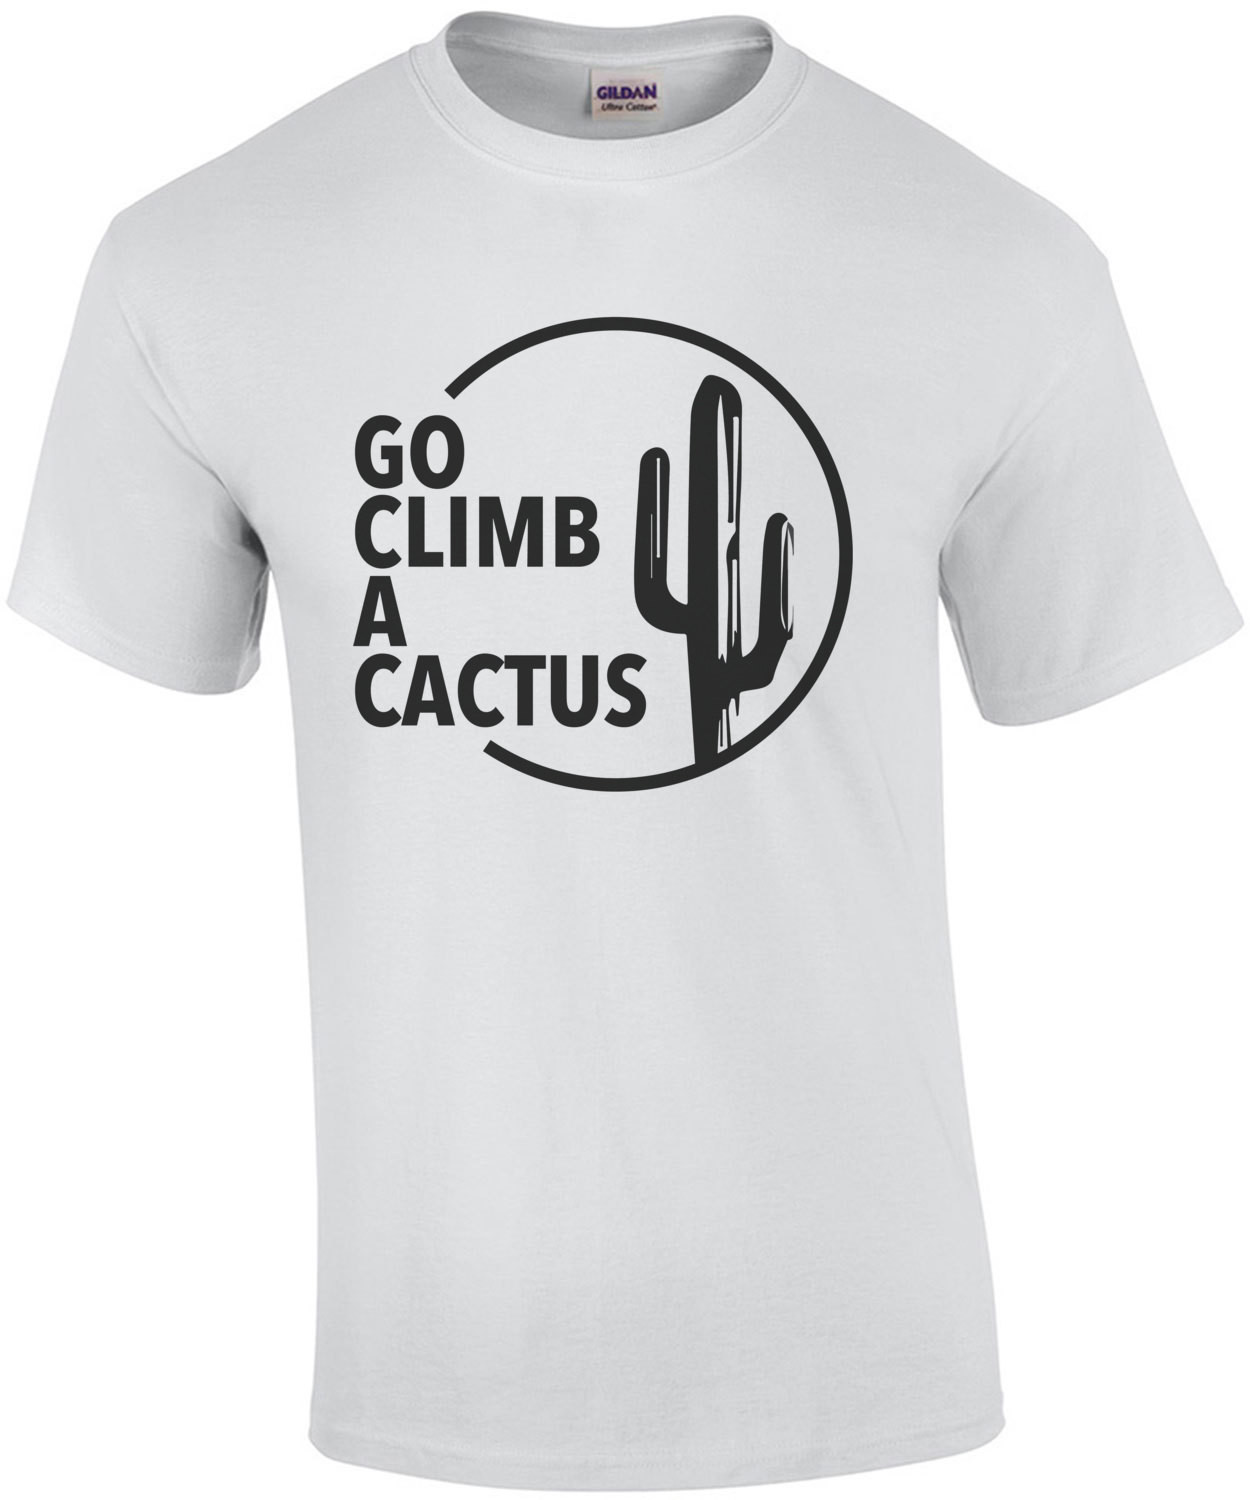 Go climb a cactus - insult t-shirt